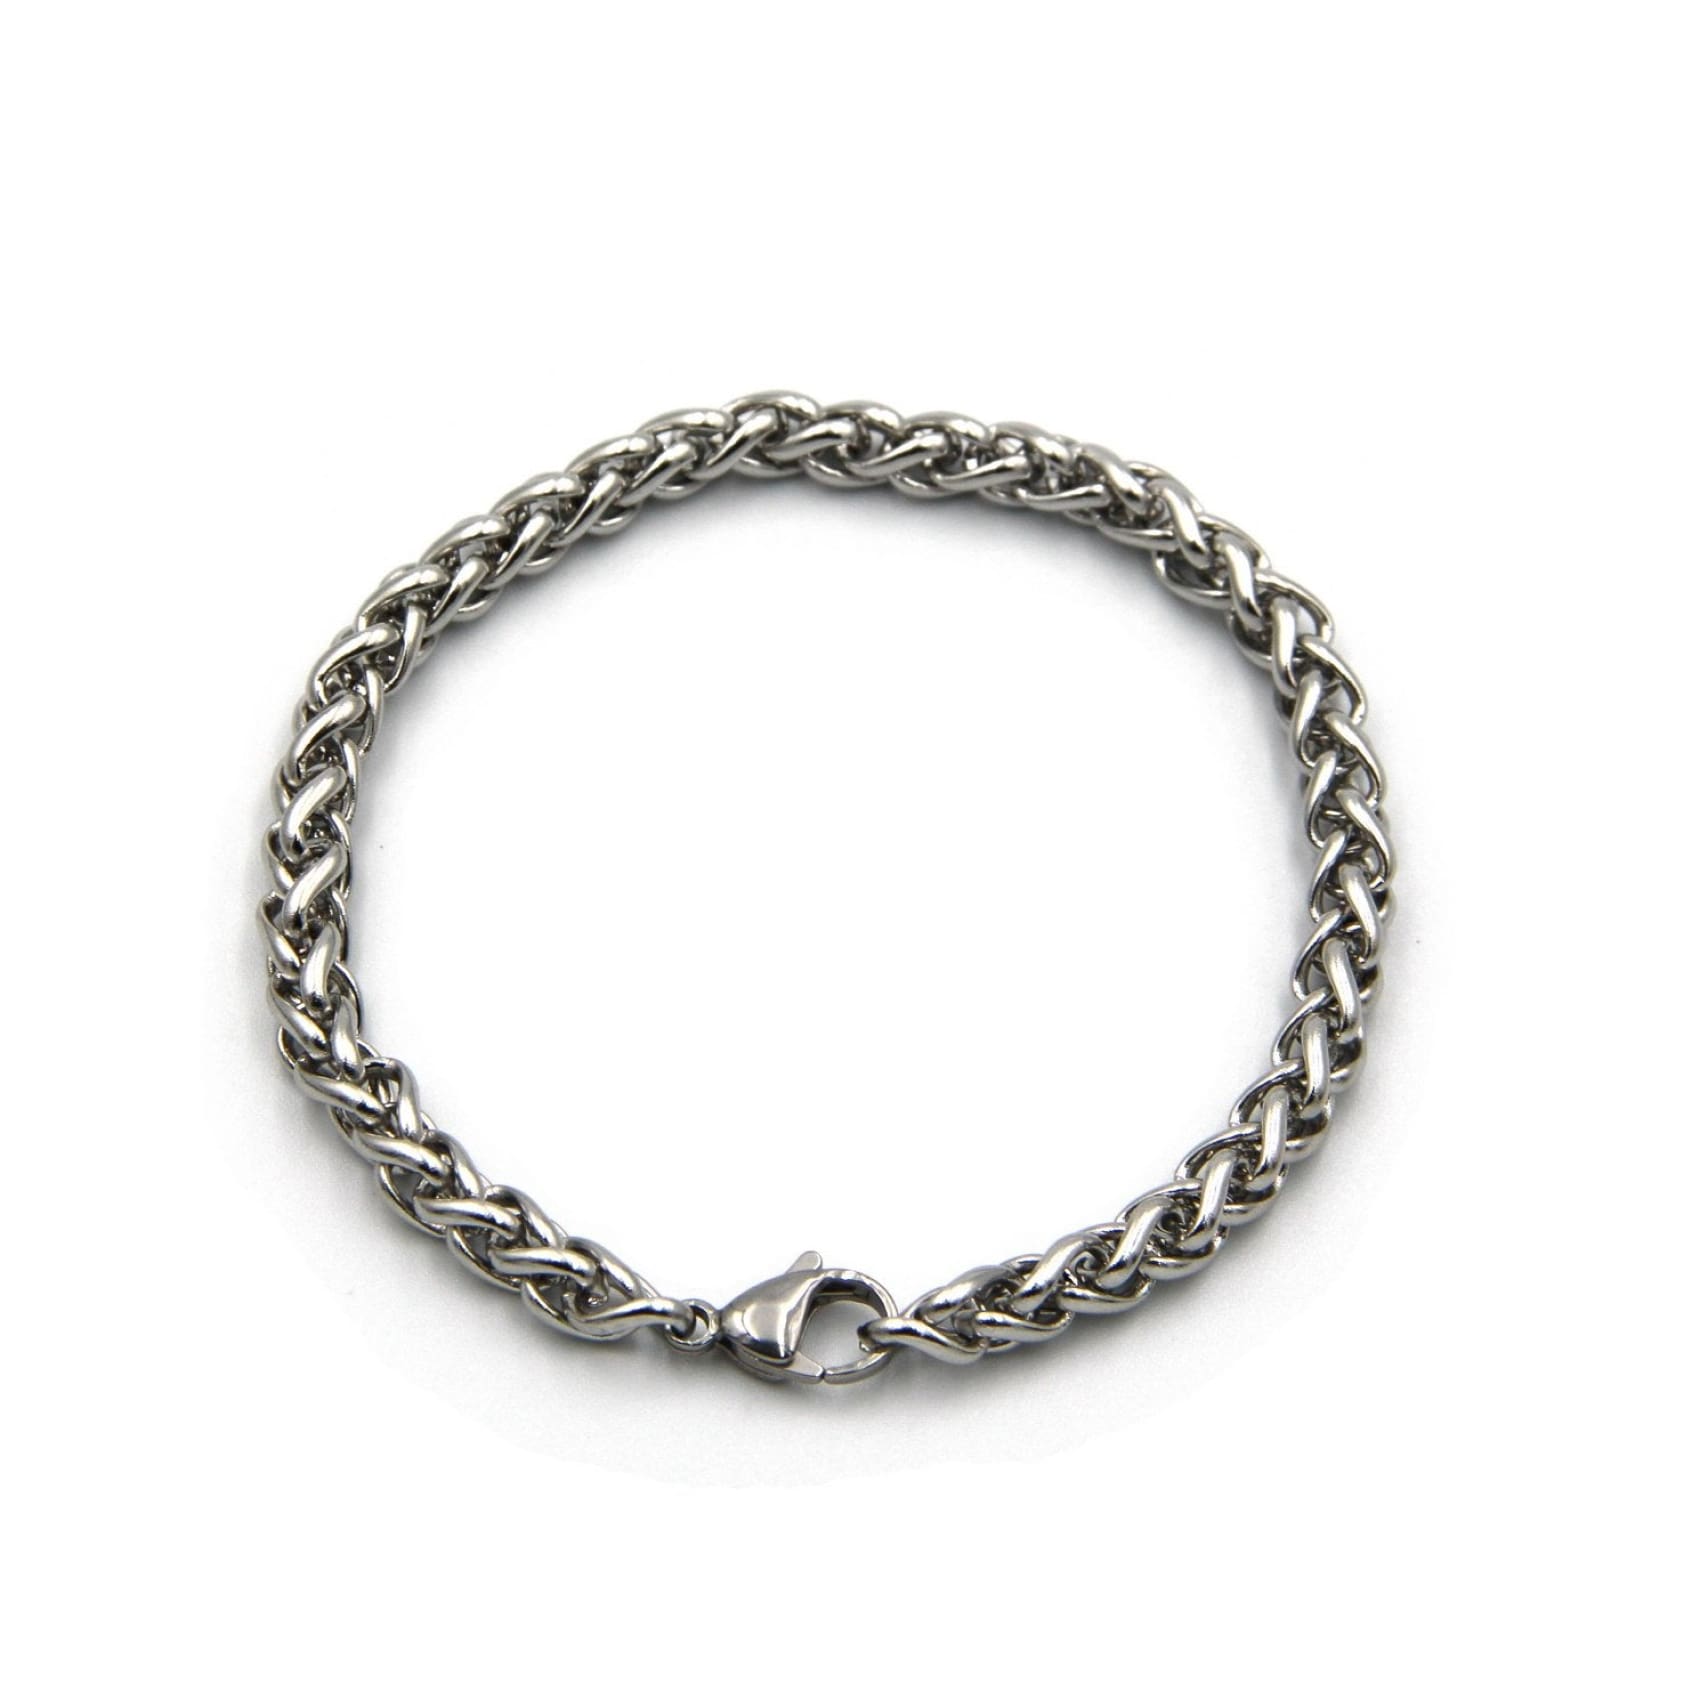 Sterling Silver Cuff Bracelet | Shop Men's & Women's Statement Bracelets |  Biker Jewelry | LUGDUN ARTISANS